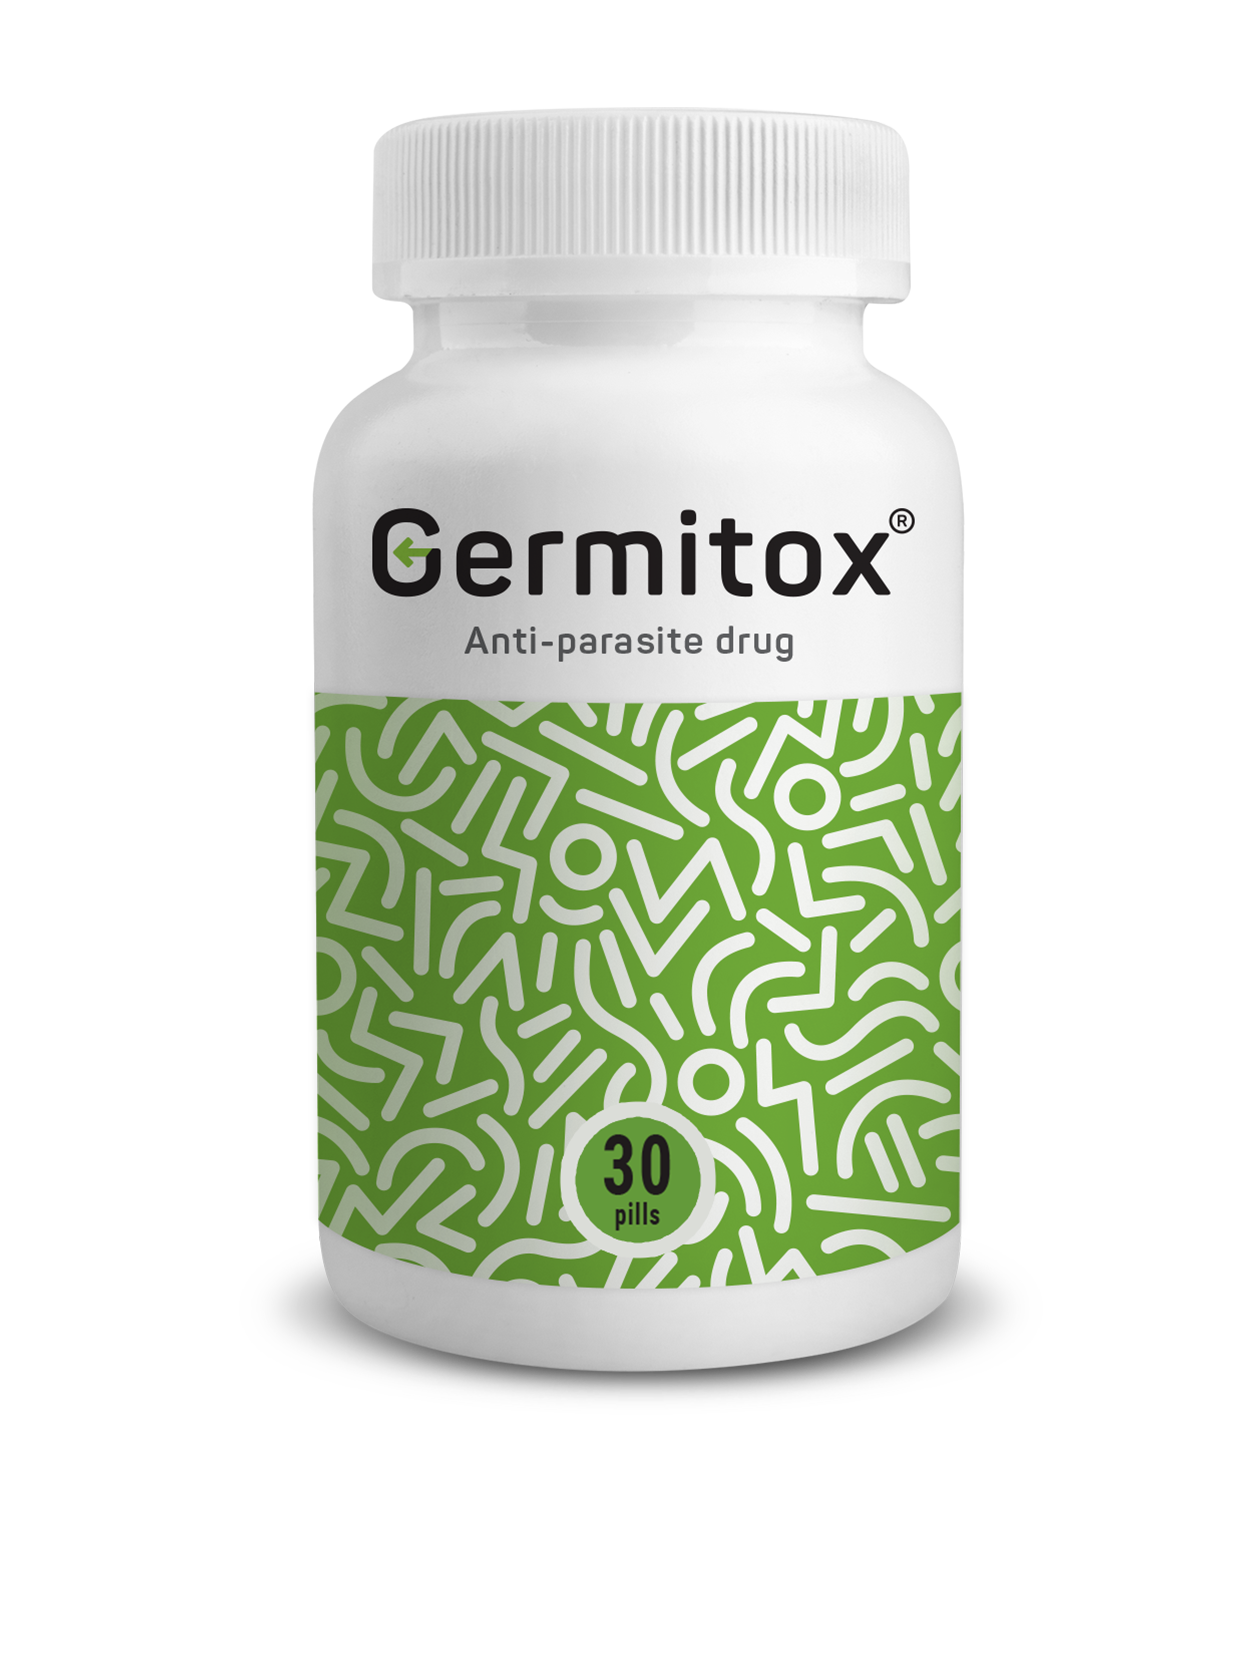 Germitox – Rywalizuj skutecznie z pasożytami oraz pozbądź się niepokojących symptomów.